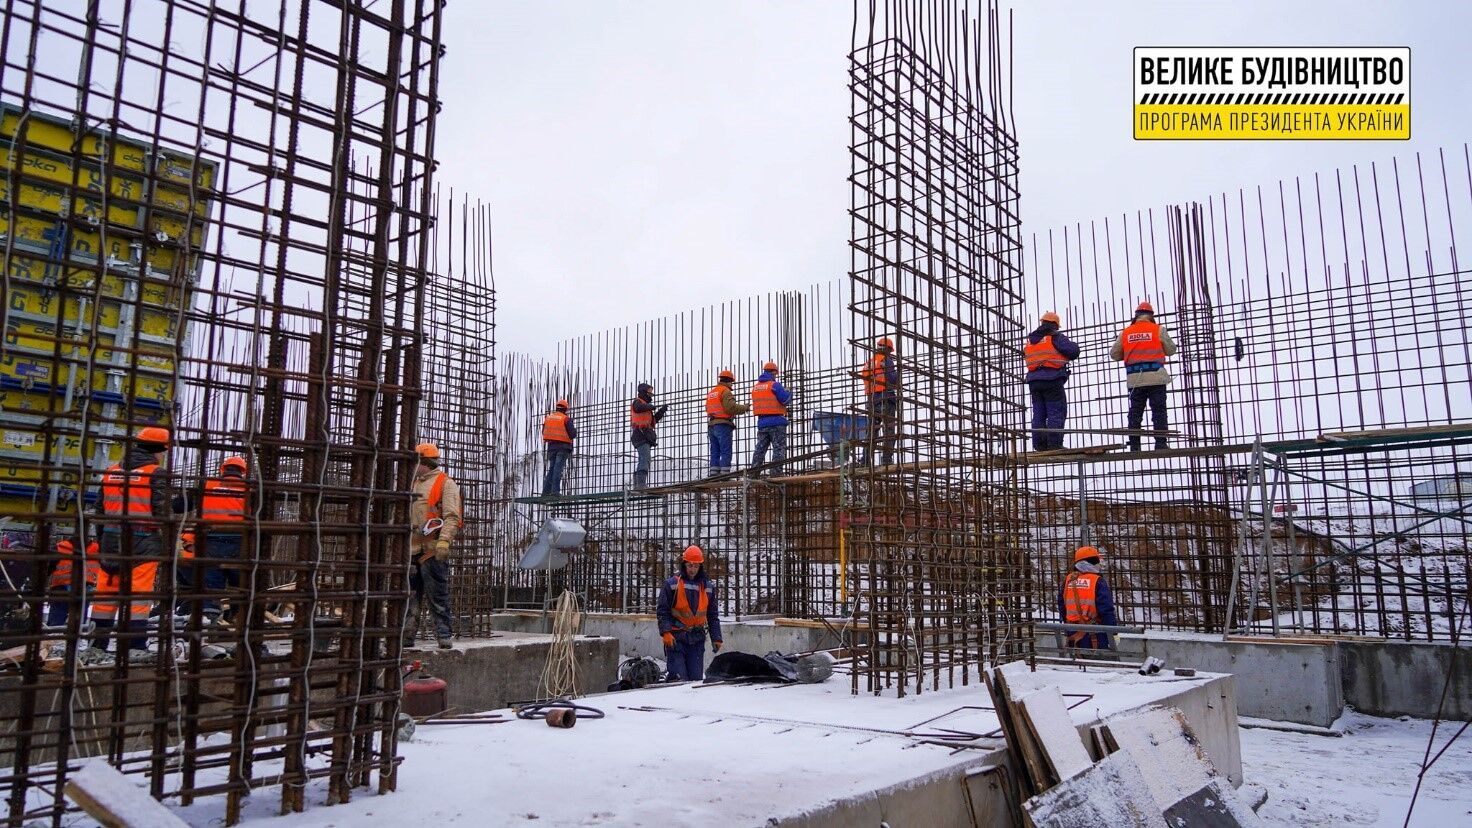 Ежедневно на строительстве работают более 300 специалистов